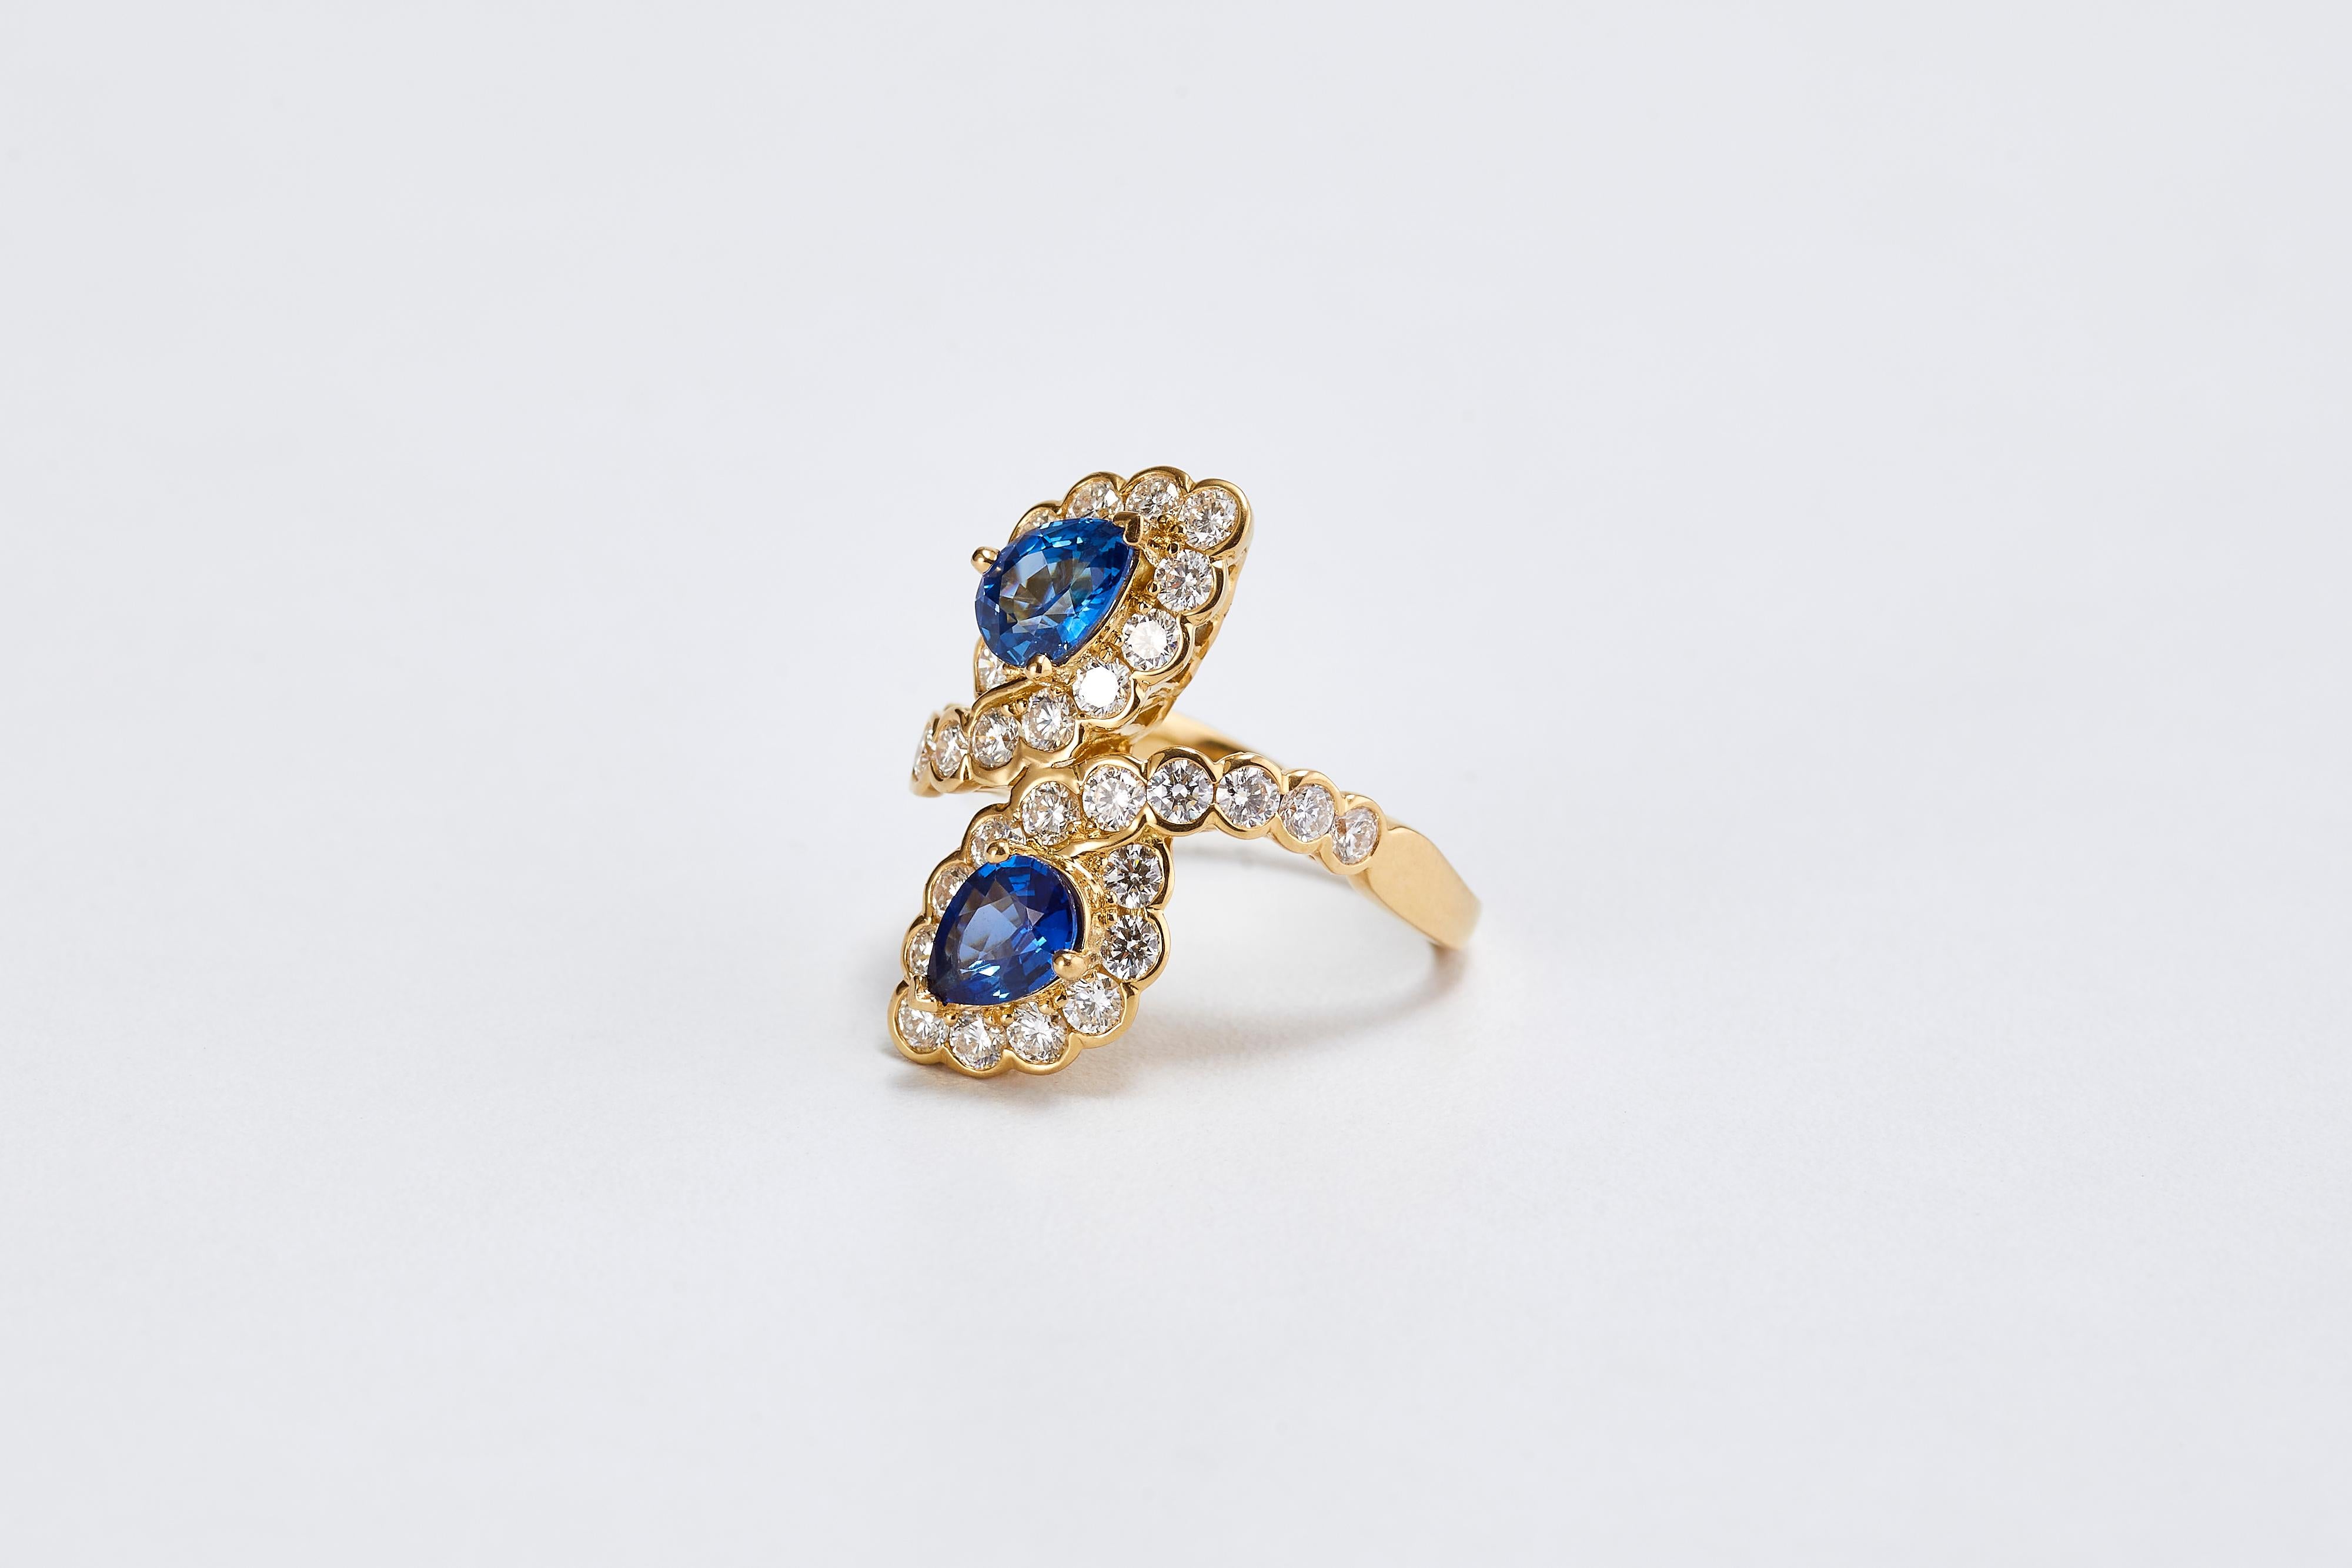 Van Cleef & Arpels Goldring mit 2 birnenförmigen blauen Saphiren und Diamanten.
Ein wunderschöner VCA-Ring aus 18 Karat Gelbgold. Mit 2 blauen, birnenförmig geschliffenen Saphiren in der Mitte. 
Die Abmessungen der Saphire sind ca. 6,30 x 5 mm, mit